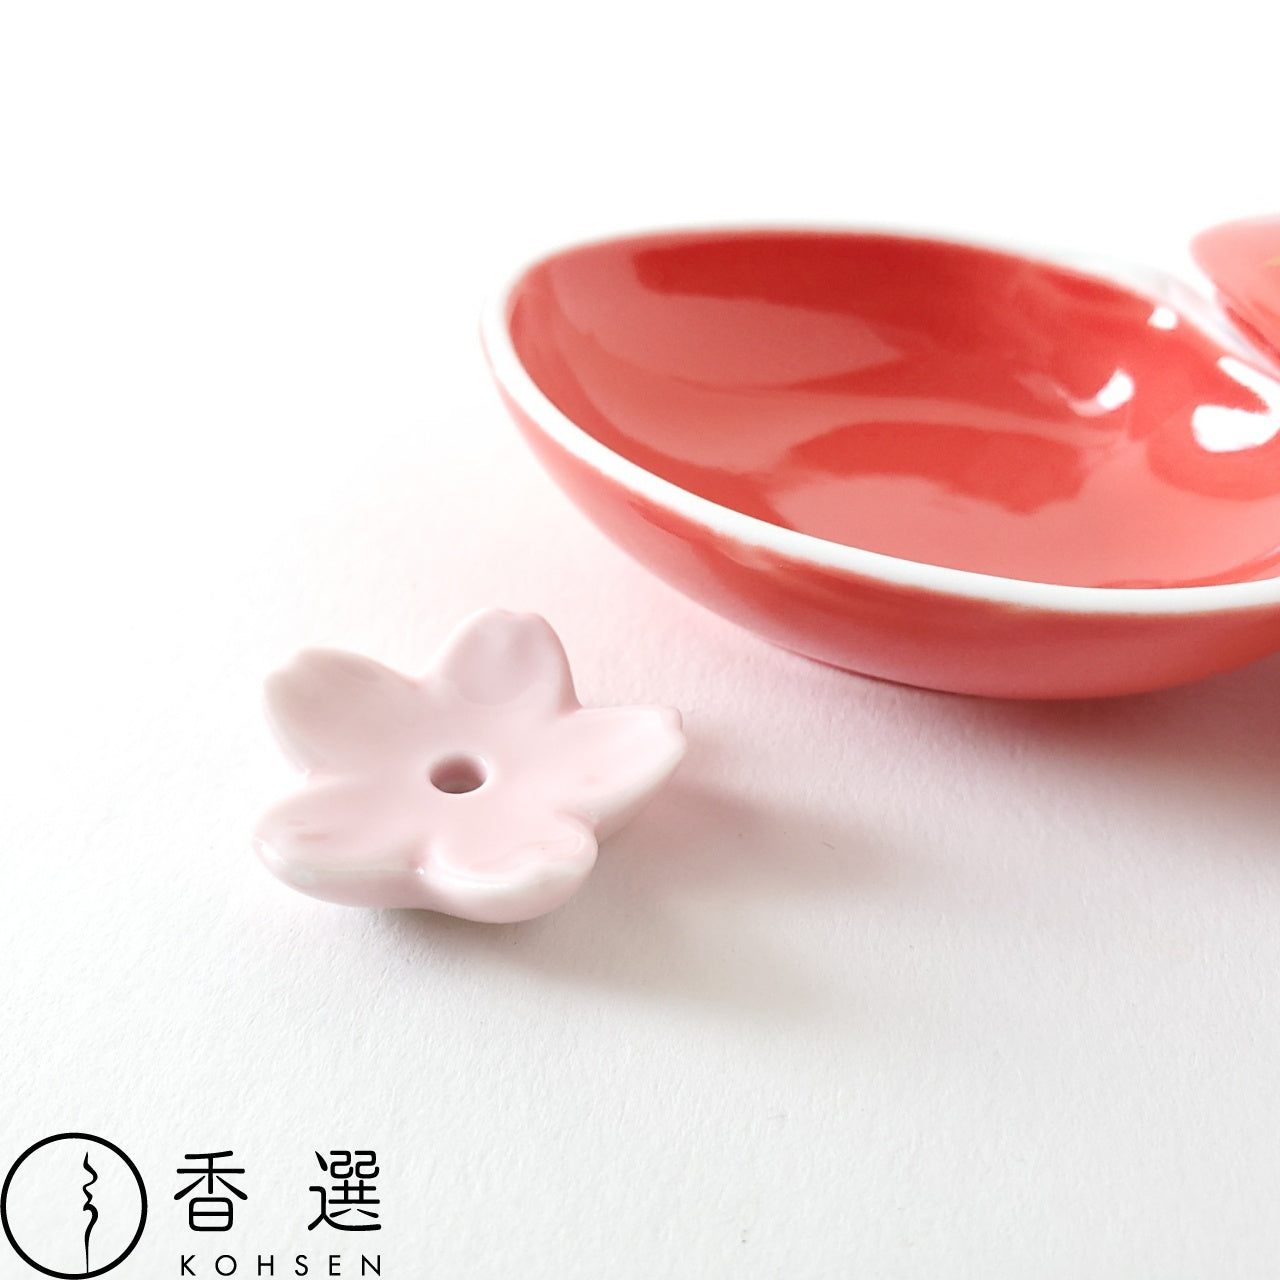 桜友禅 ピンク 丸香皿 お香立て お香たて 陶器 日本製 ACS WEB SHOPオリジナル 9-26